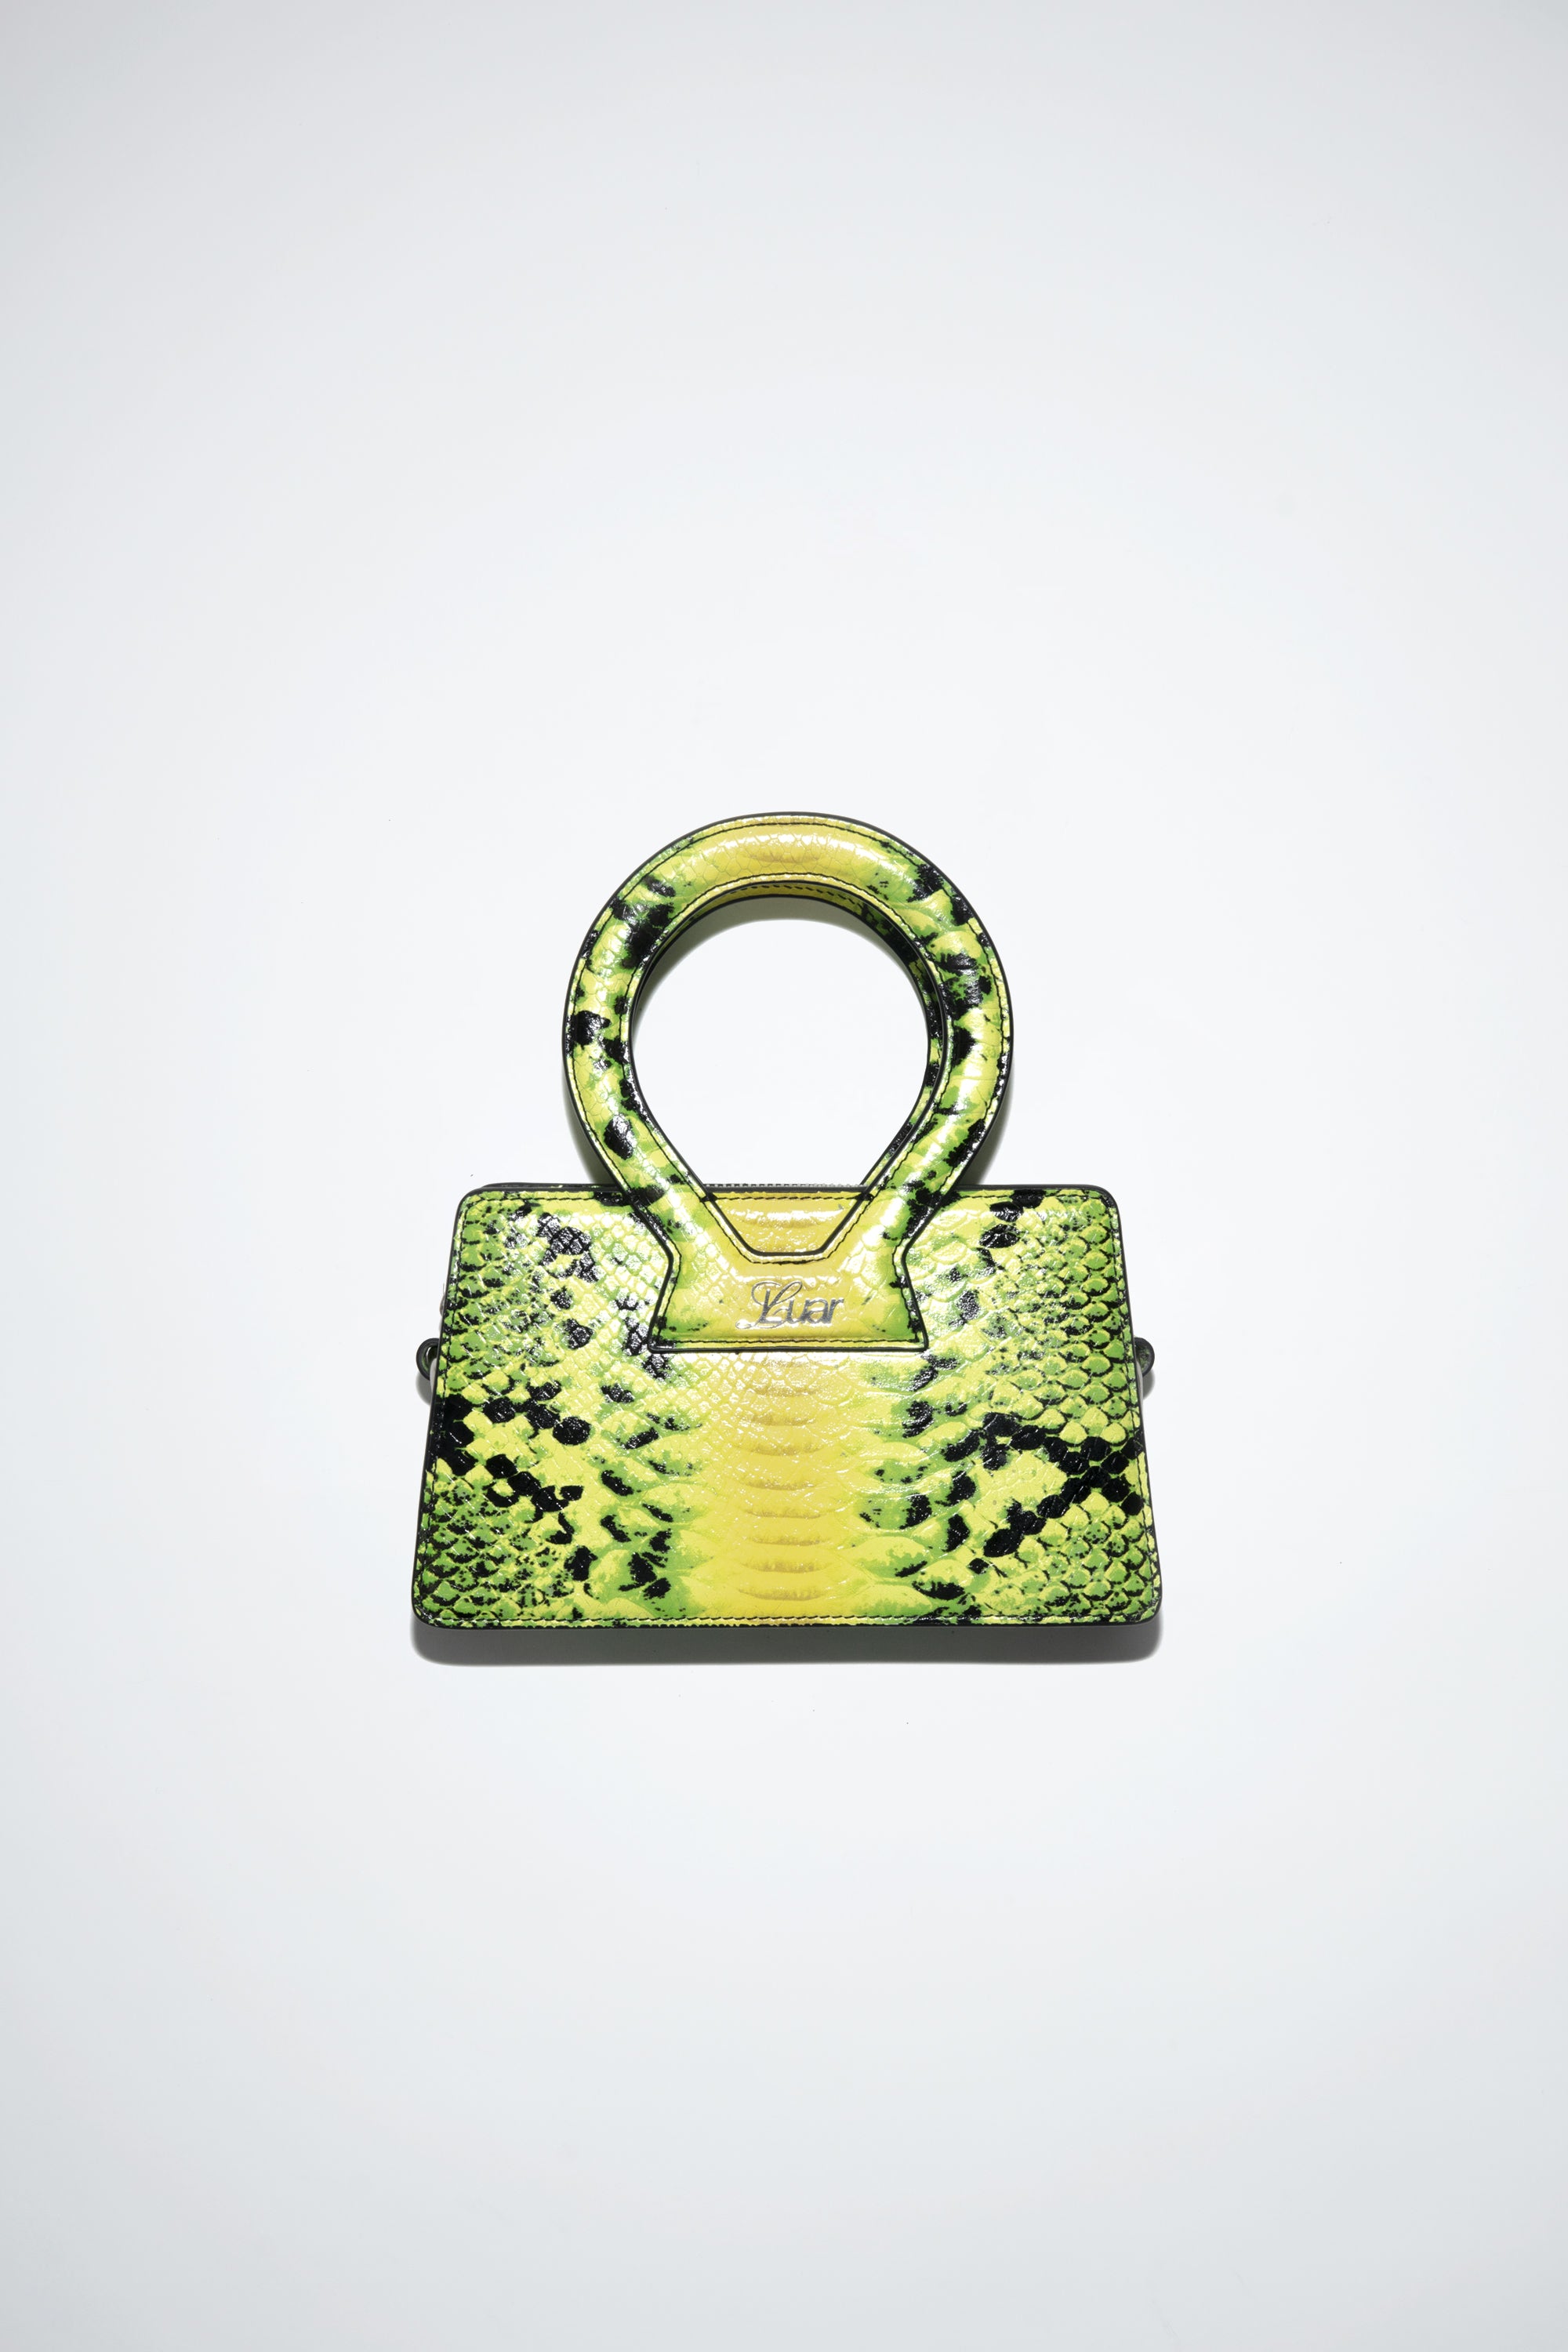 green python bag